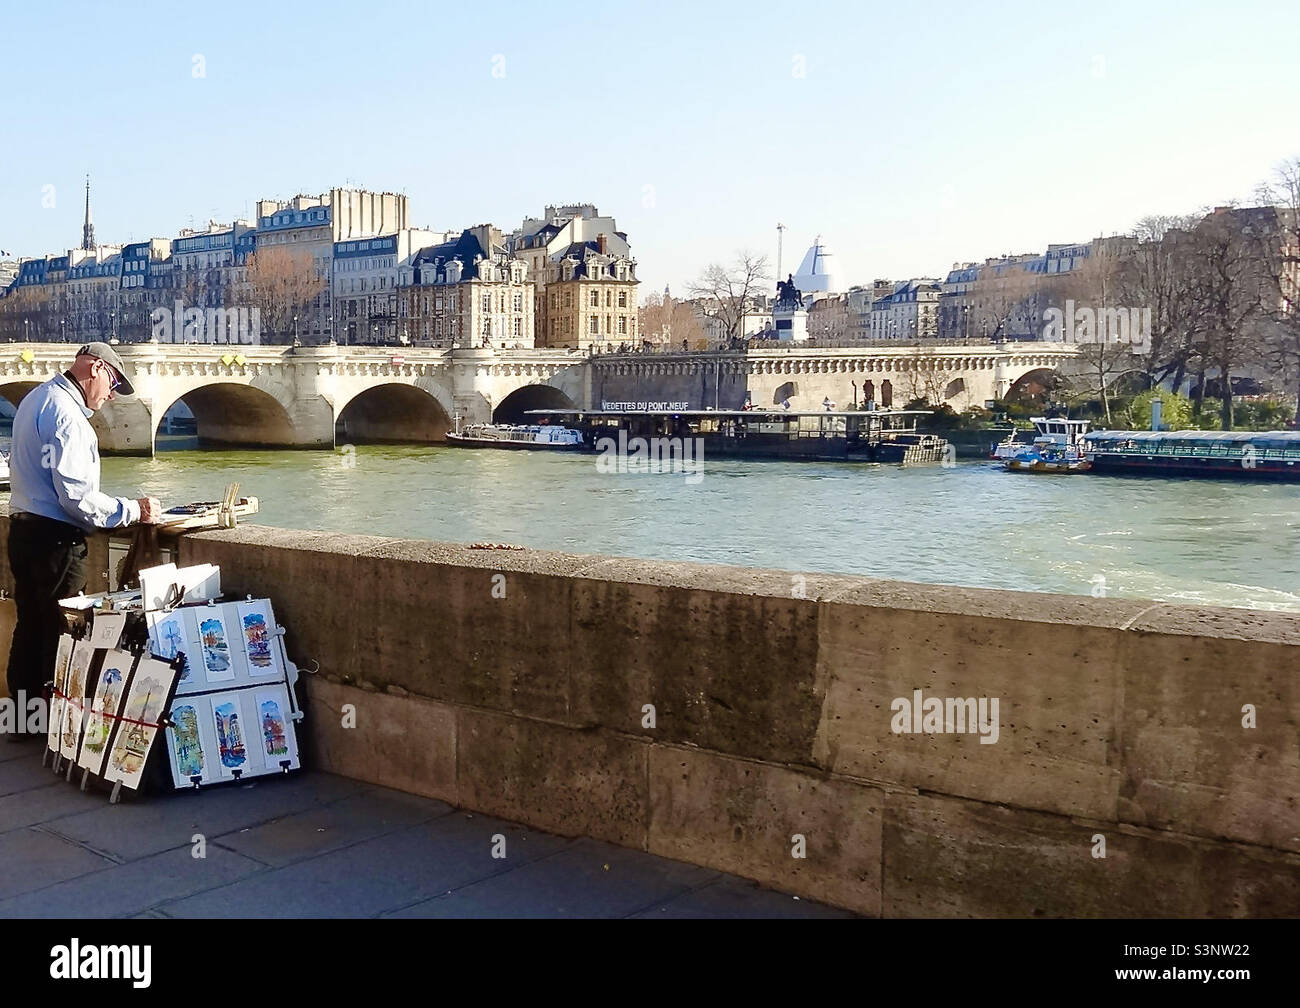 Un artiste peint sur la Seine à Paris, en France, face à la rive gauche, près du Pont neuf (Nouveau pont : 1578-1607), le plus ancien pont sur la rivière. Une statue de bronze du roi Henri IV est à proximité. Banque D'Images